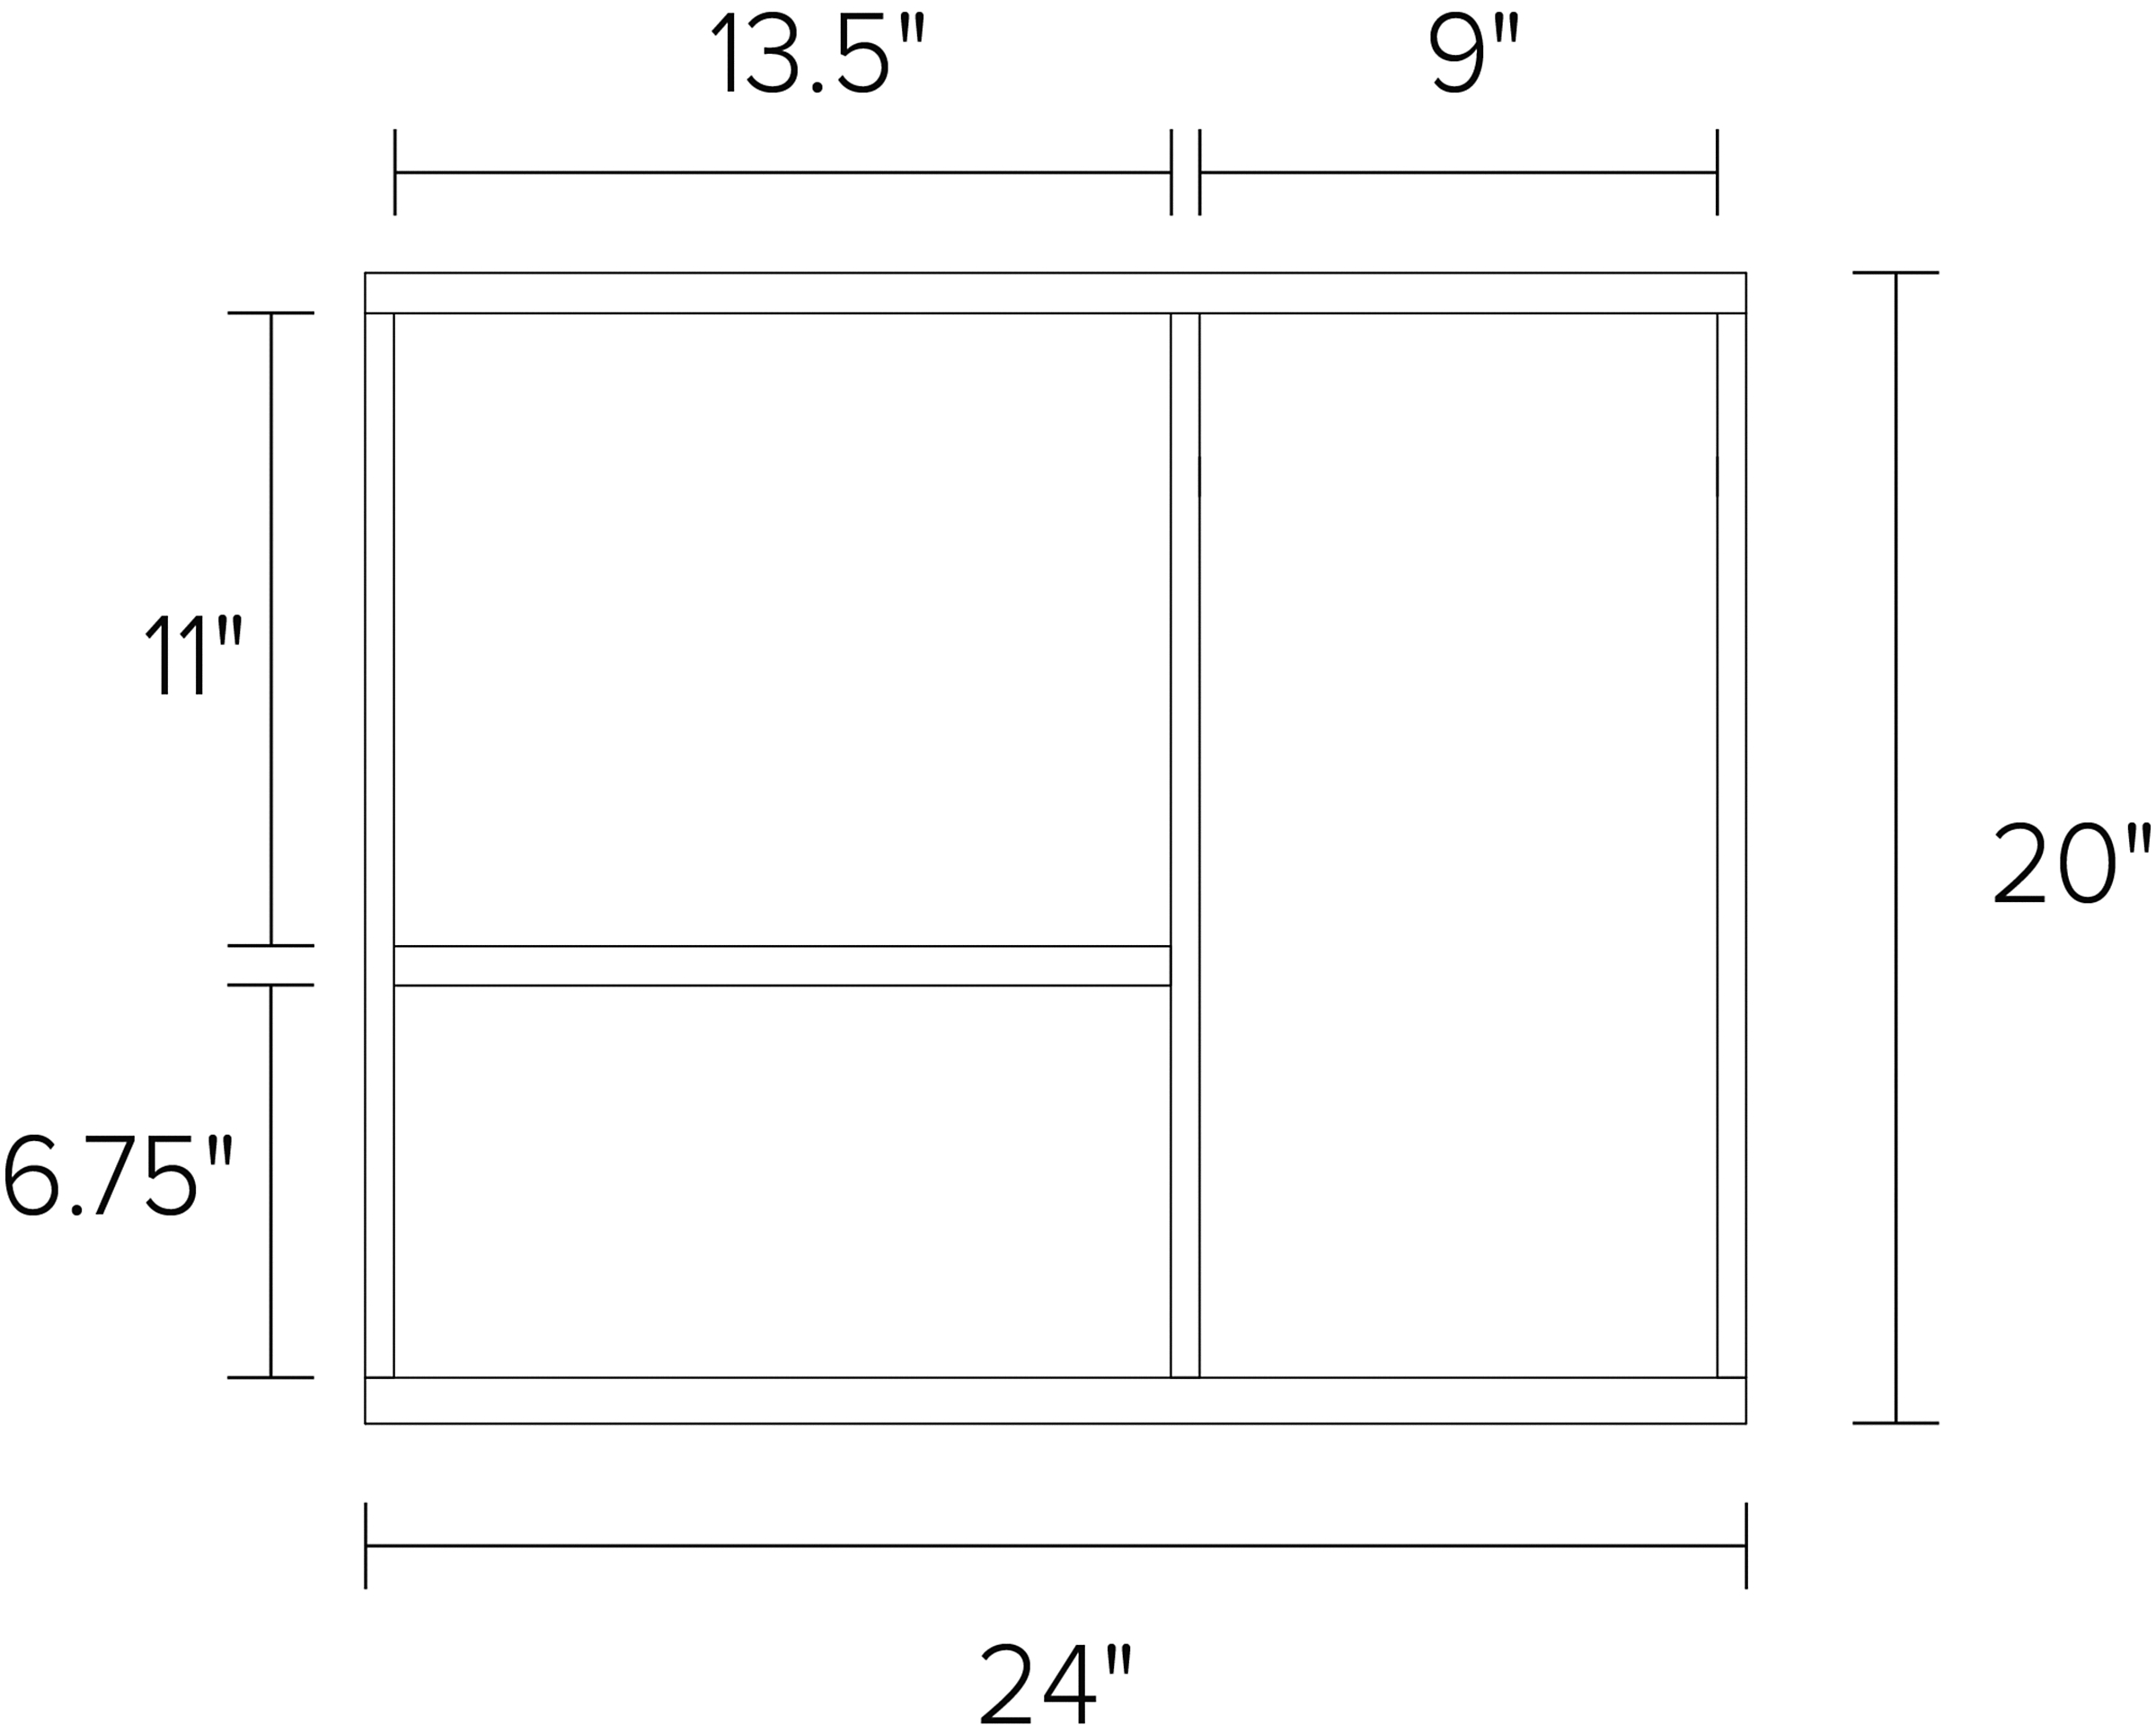 Foshay 24w 20h Three-Shelf Wall Unit Dimension Drawing.